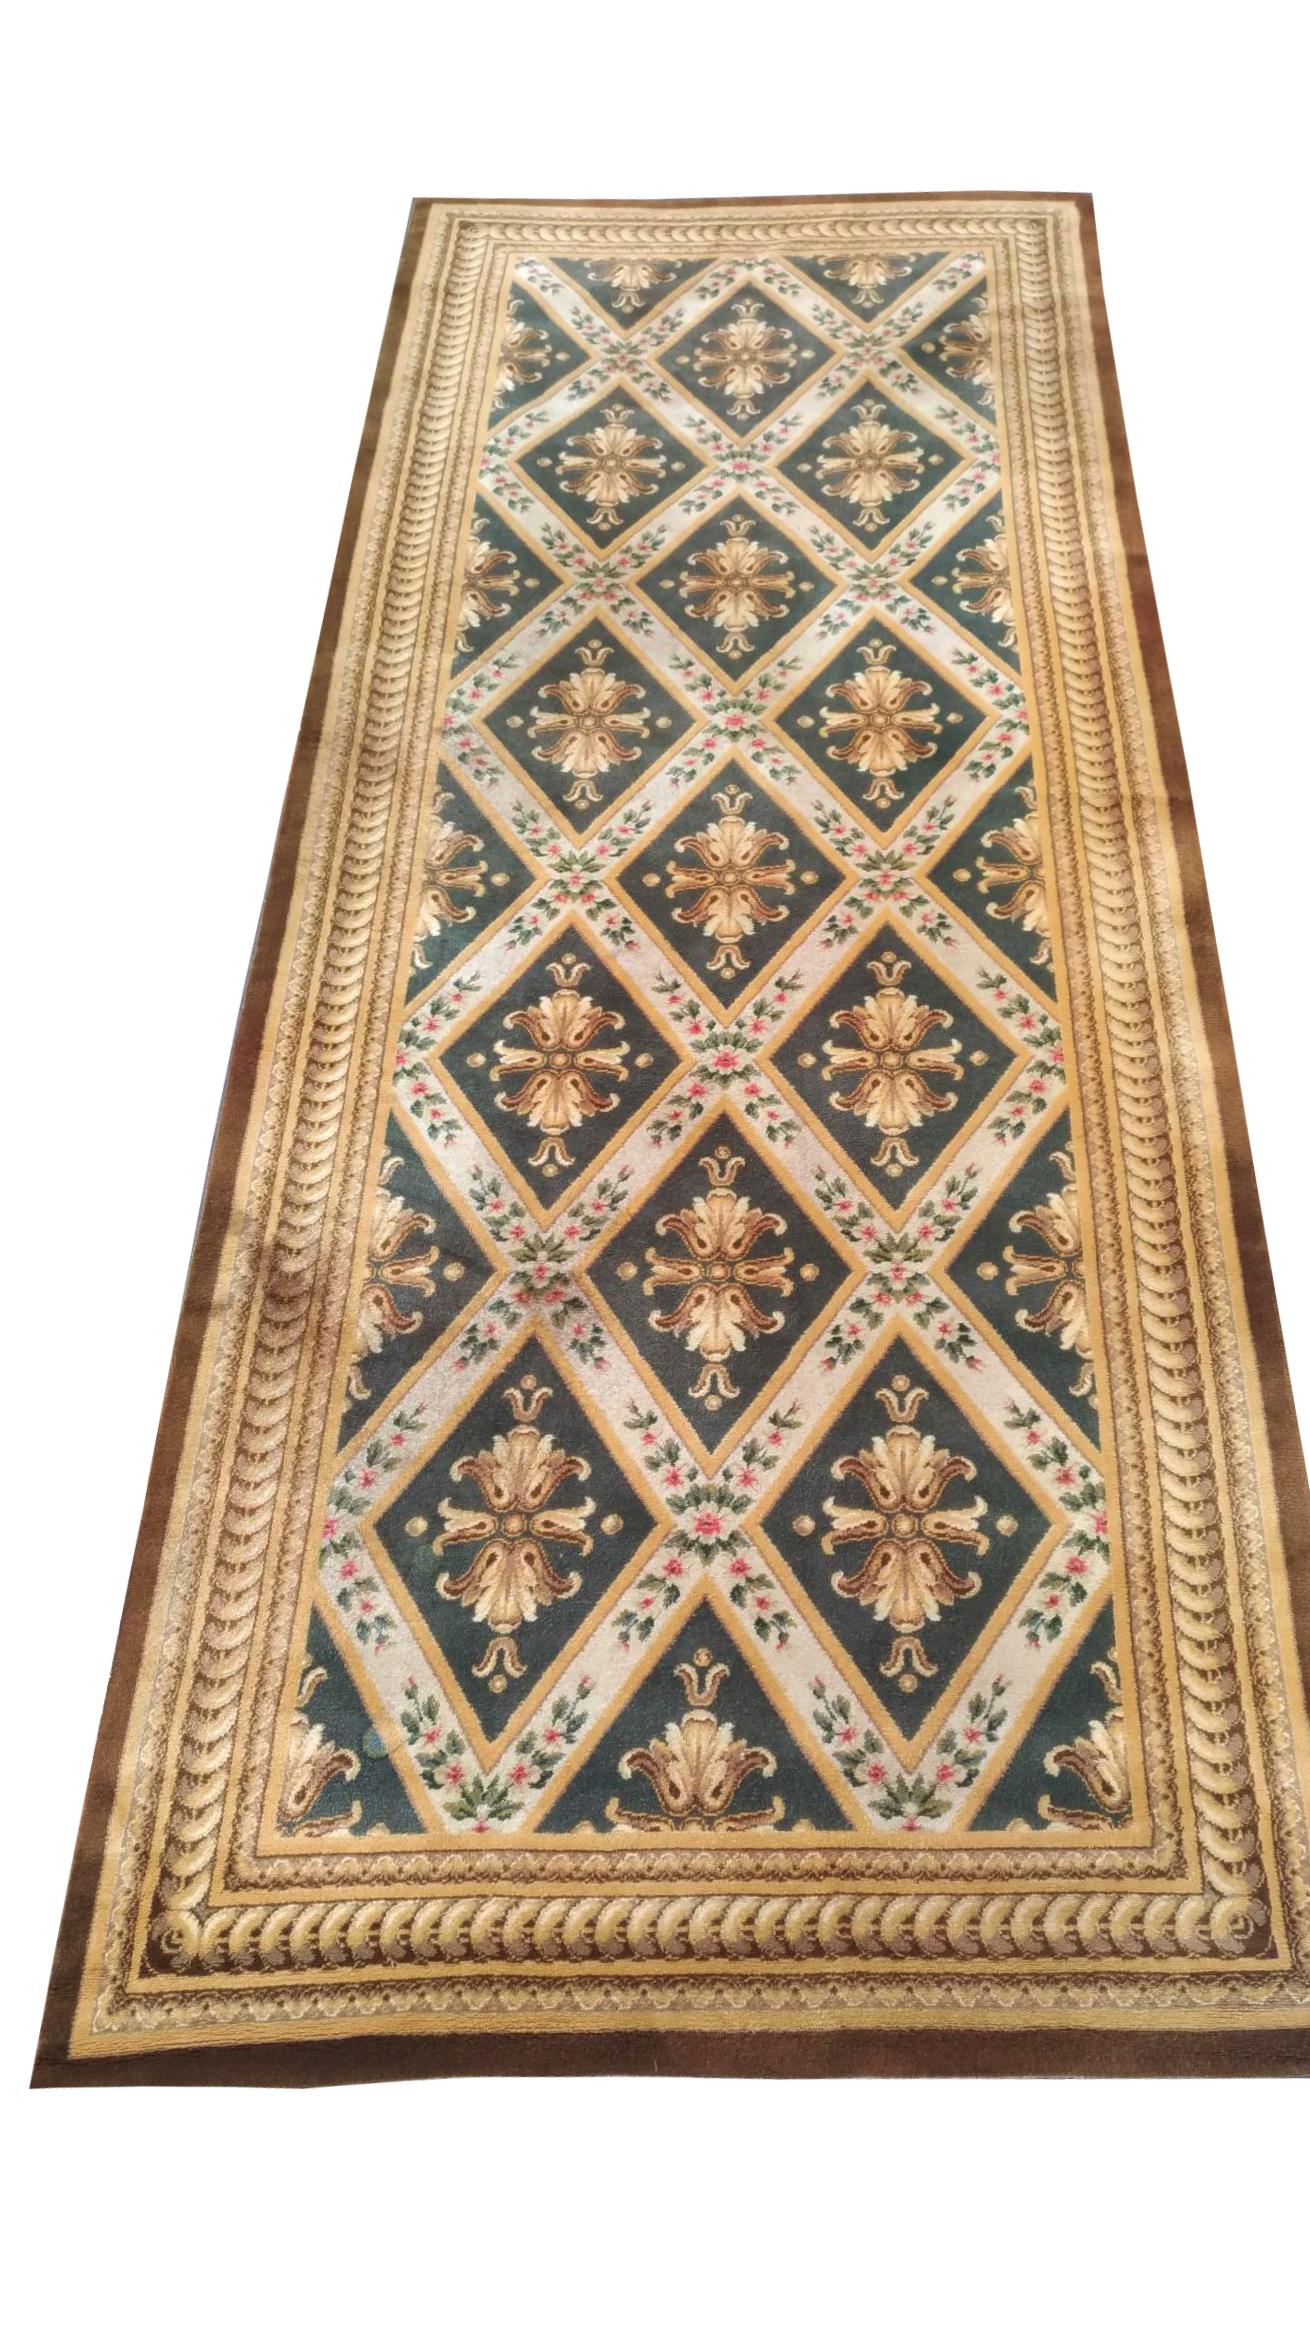 1043 - Beau tapis Aubusson savonnerie avec de jolis motifs et couleurs et de style Savonnerie, entièrement noué en velours de laine sur un fond de coton.